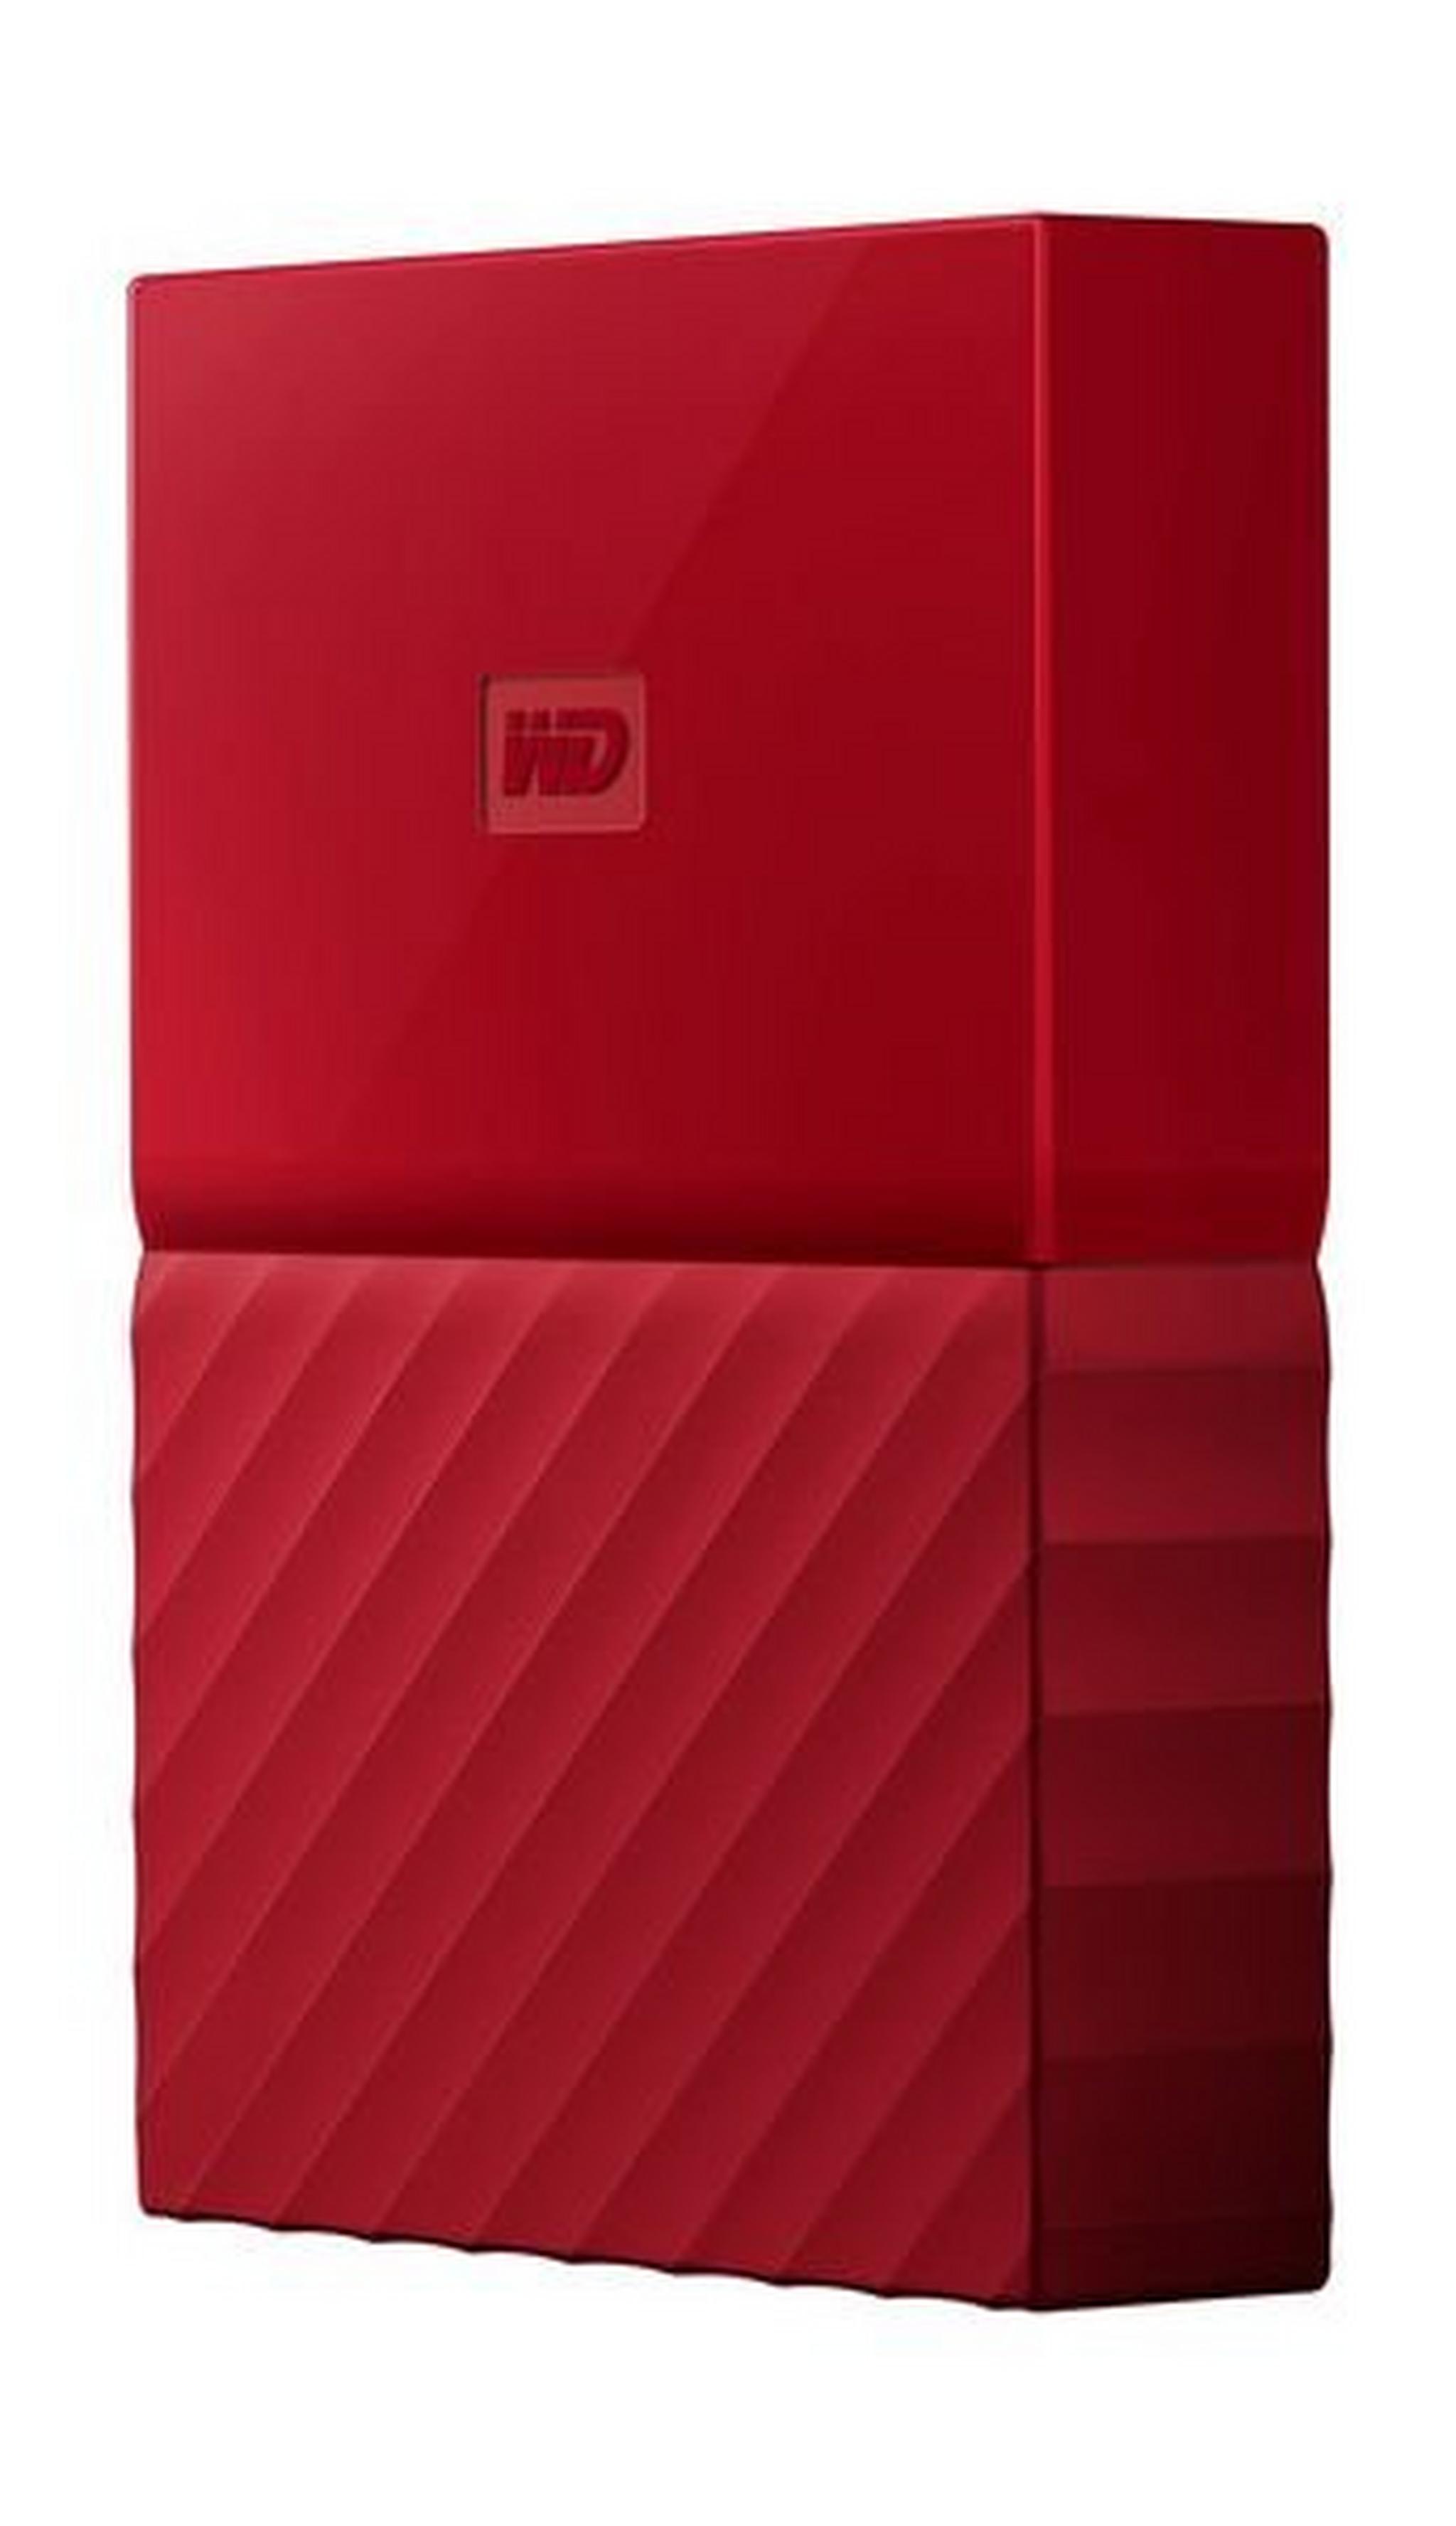 WD 1TB My Passport USB 3.0 External Hard Drive - Red